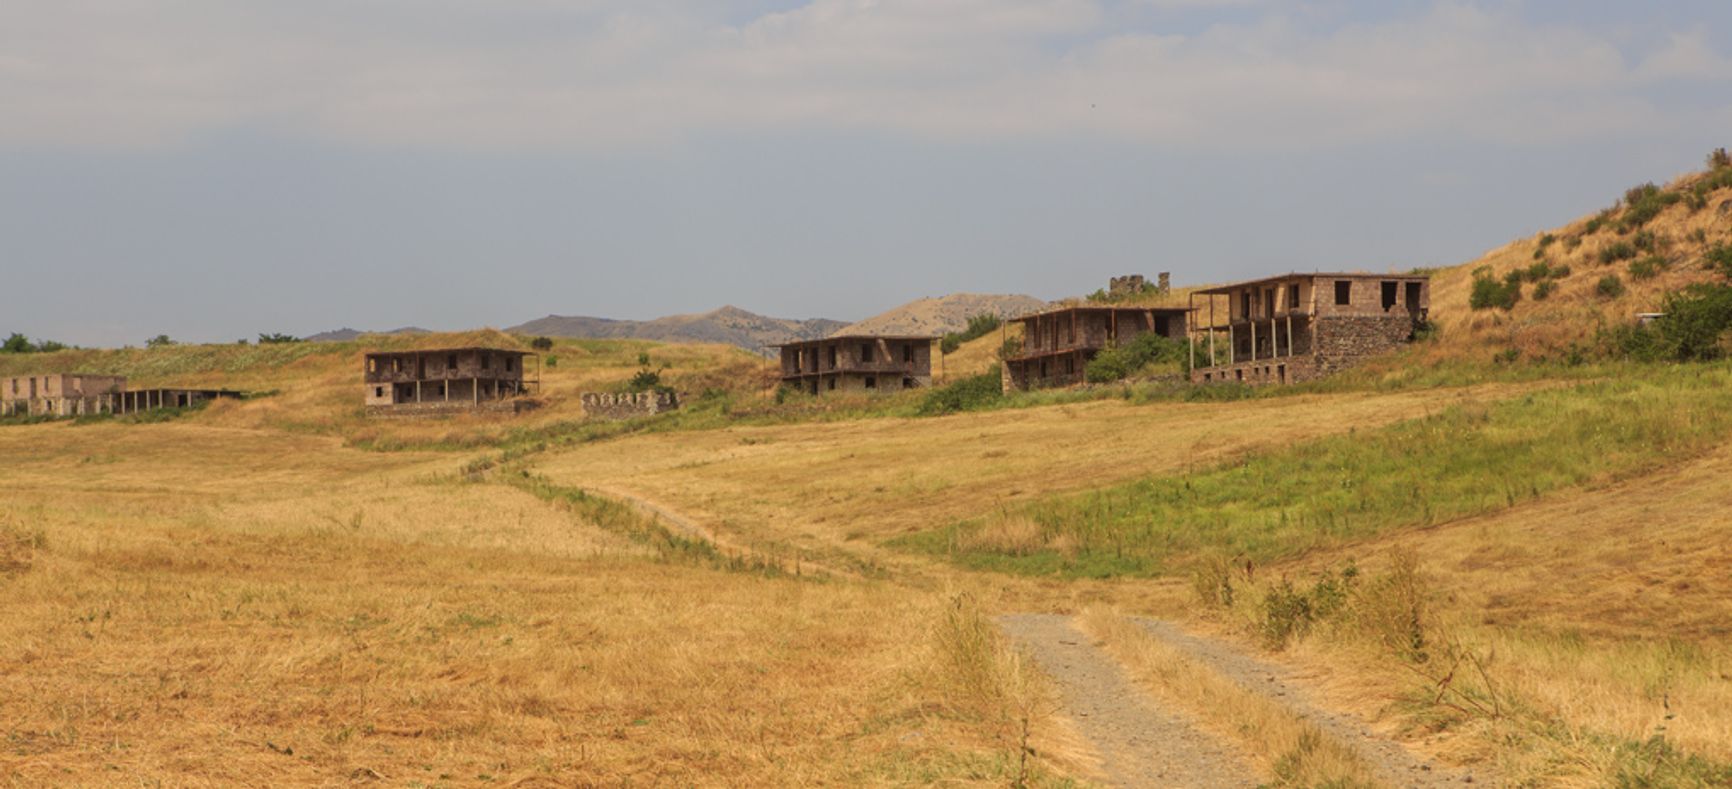 Заброшенное село Ашагы Аскипара (армянское название — Воскепар), передачи которого в числе трех других добивается Азербайджан